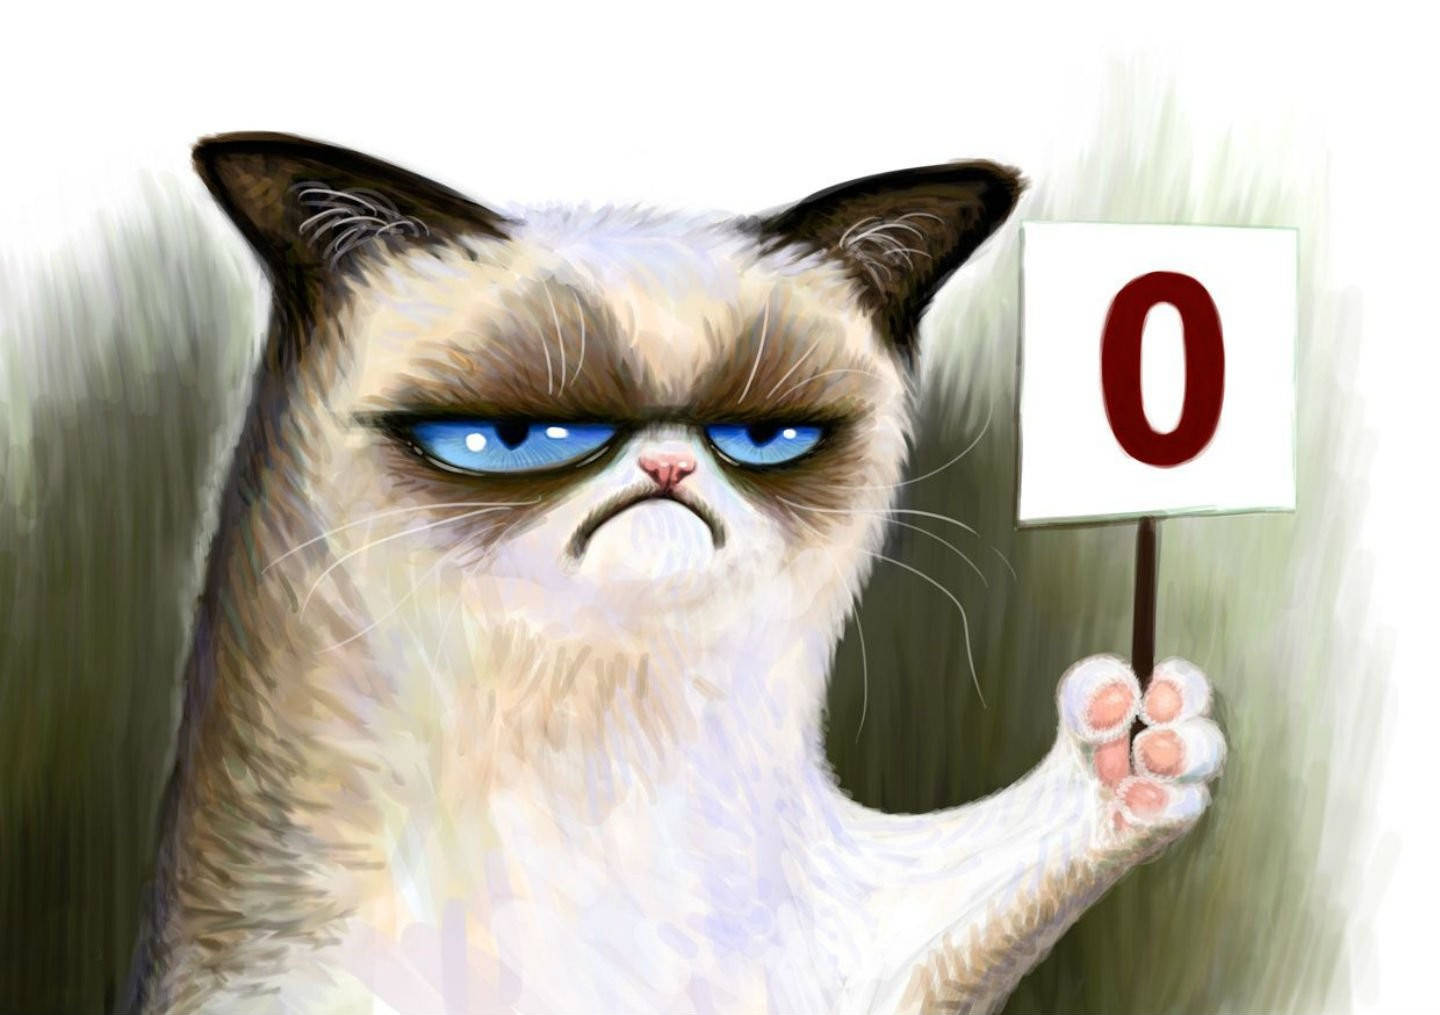 Short-tempered cat meme wallpaper